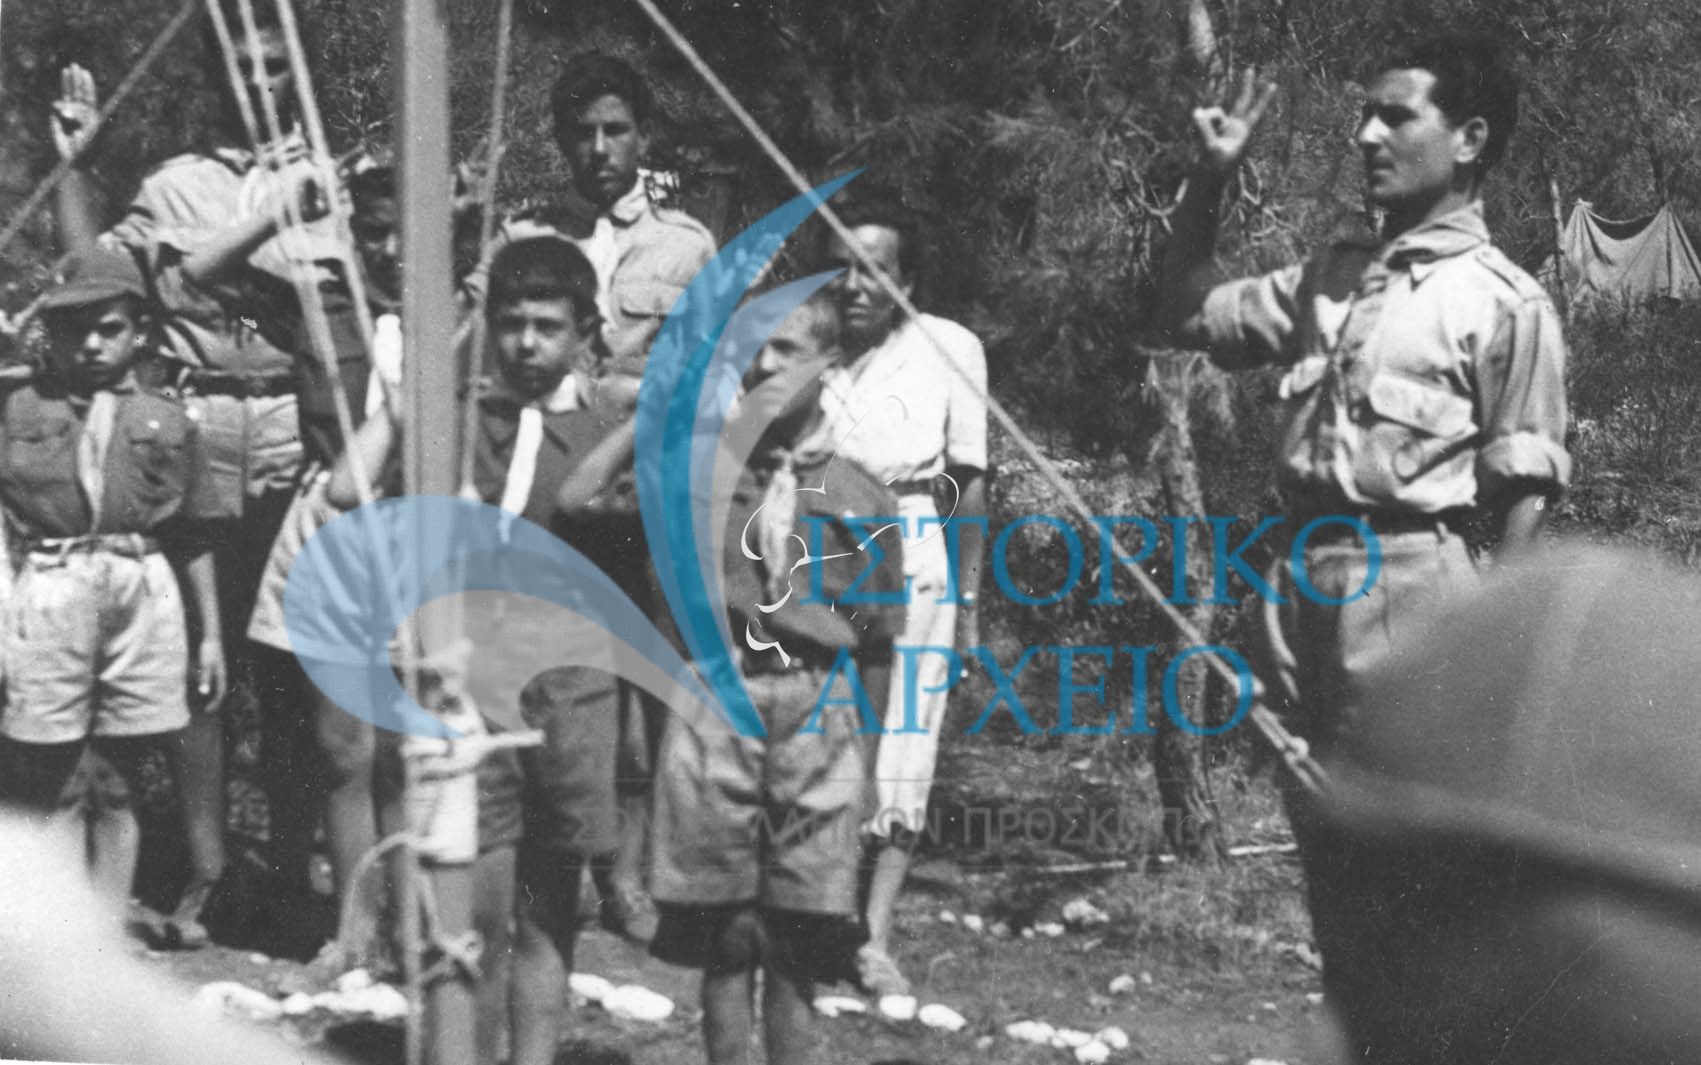 Λυκόπουλο χαιρετά σε έπαρση Σημαίας Κατασκήνωσης στο Ζούμπερι το 1950.